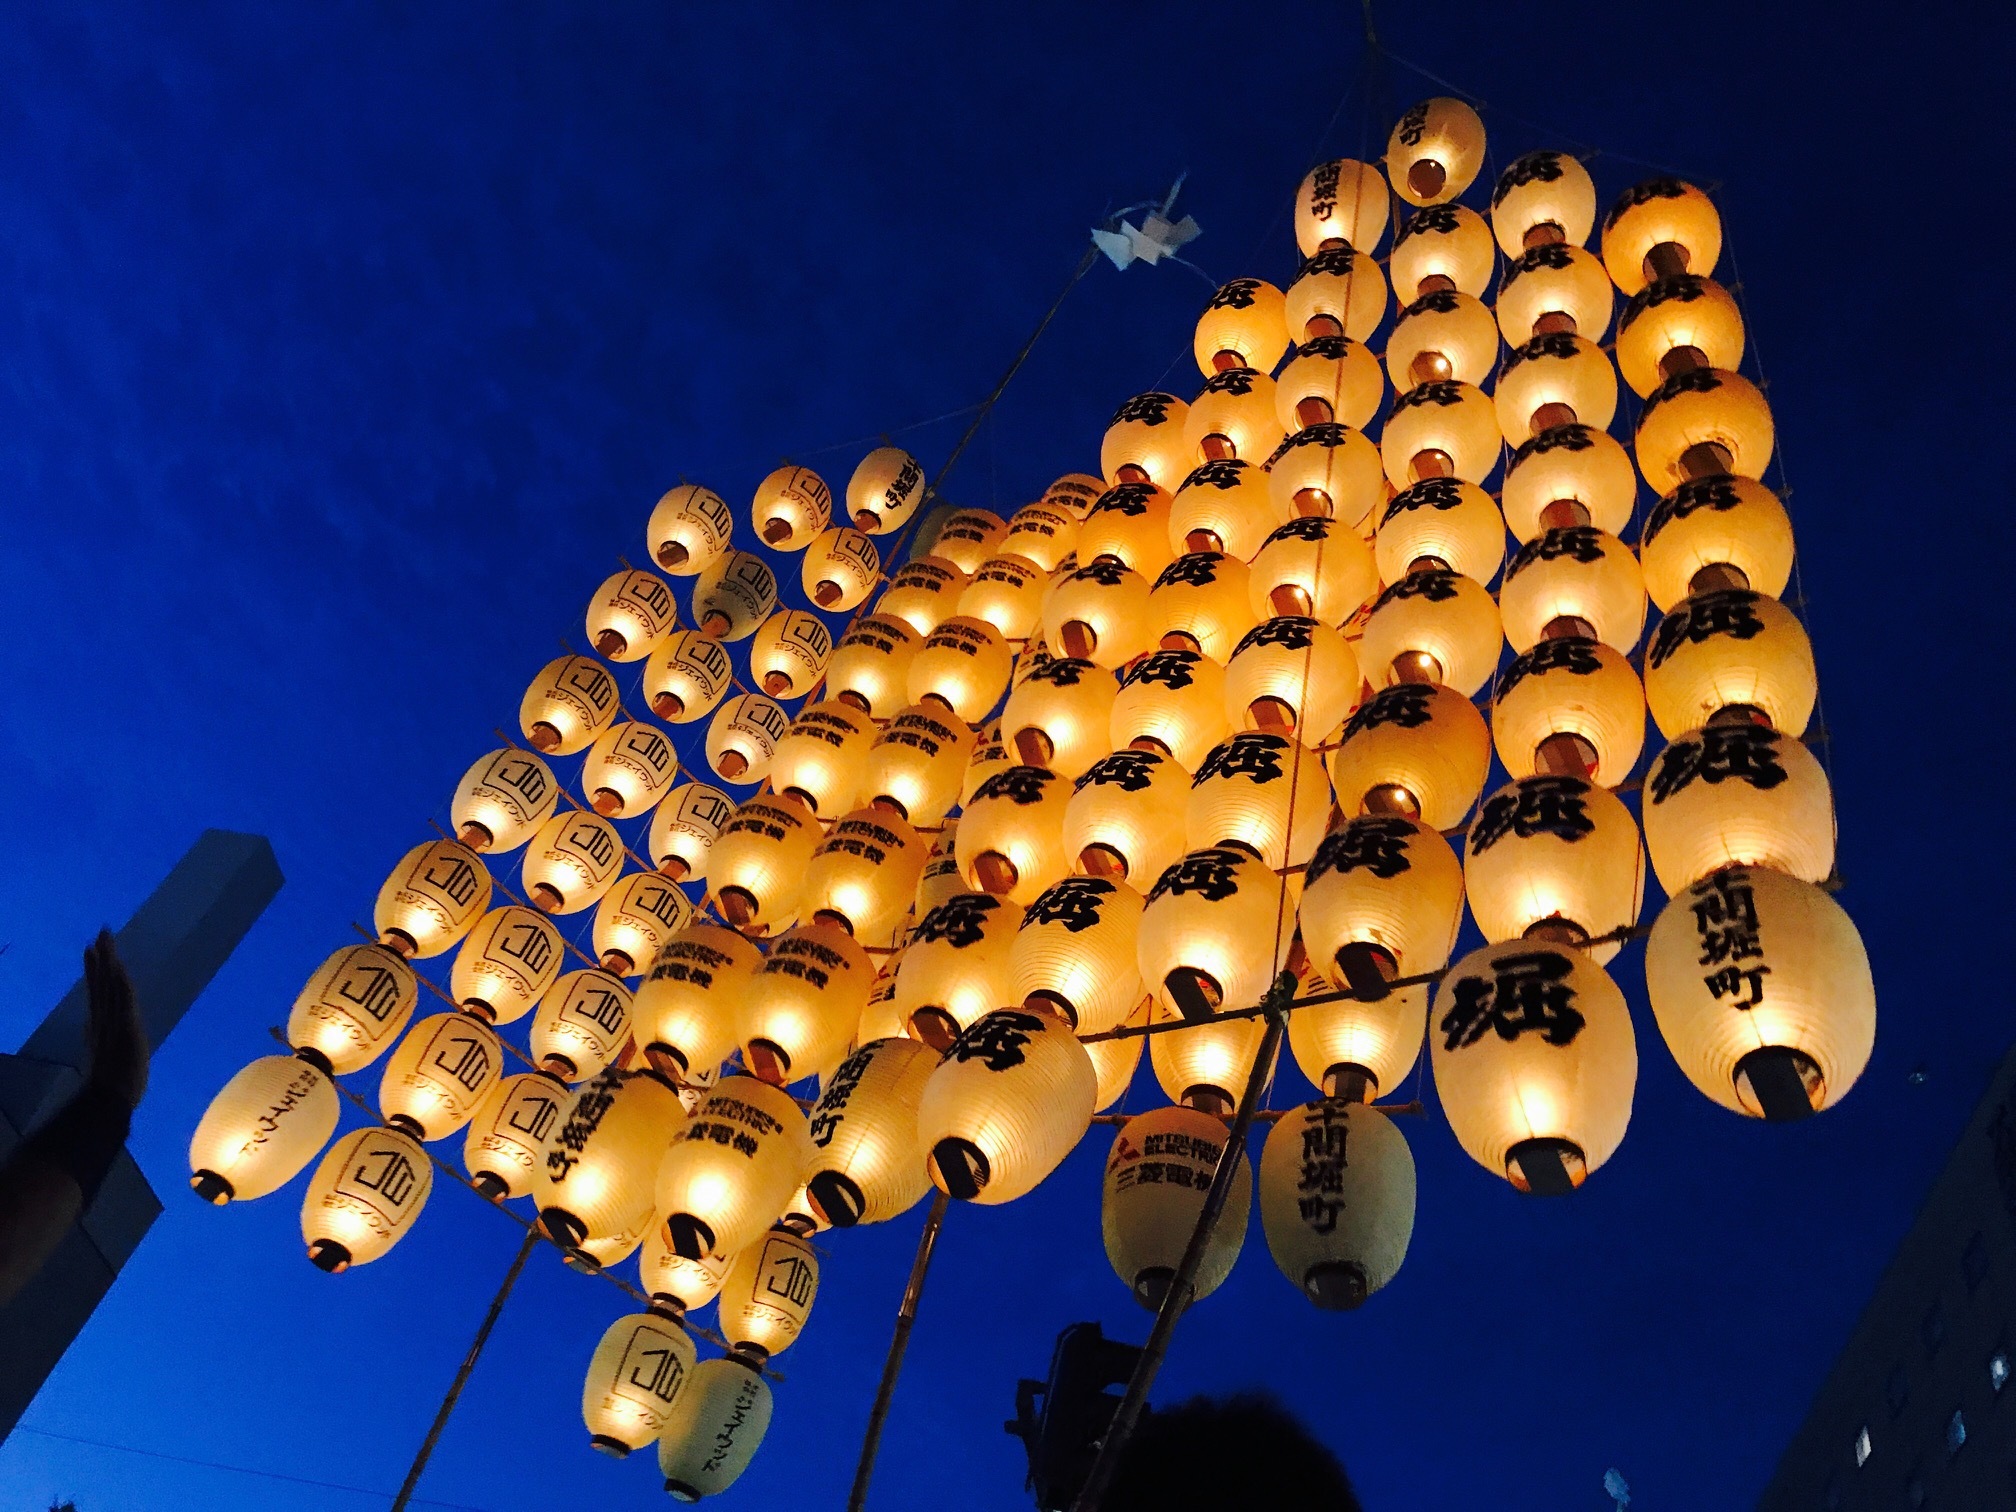 闇を照らす幻想的なあかり 重さ50キロの竿燈を操る妙技で100万人超を魅了する 秋田竿燈まつり が開催 Spice エンタメ特化型情報メディア スパイス